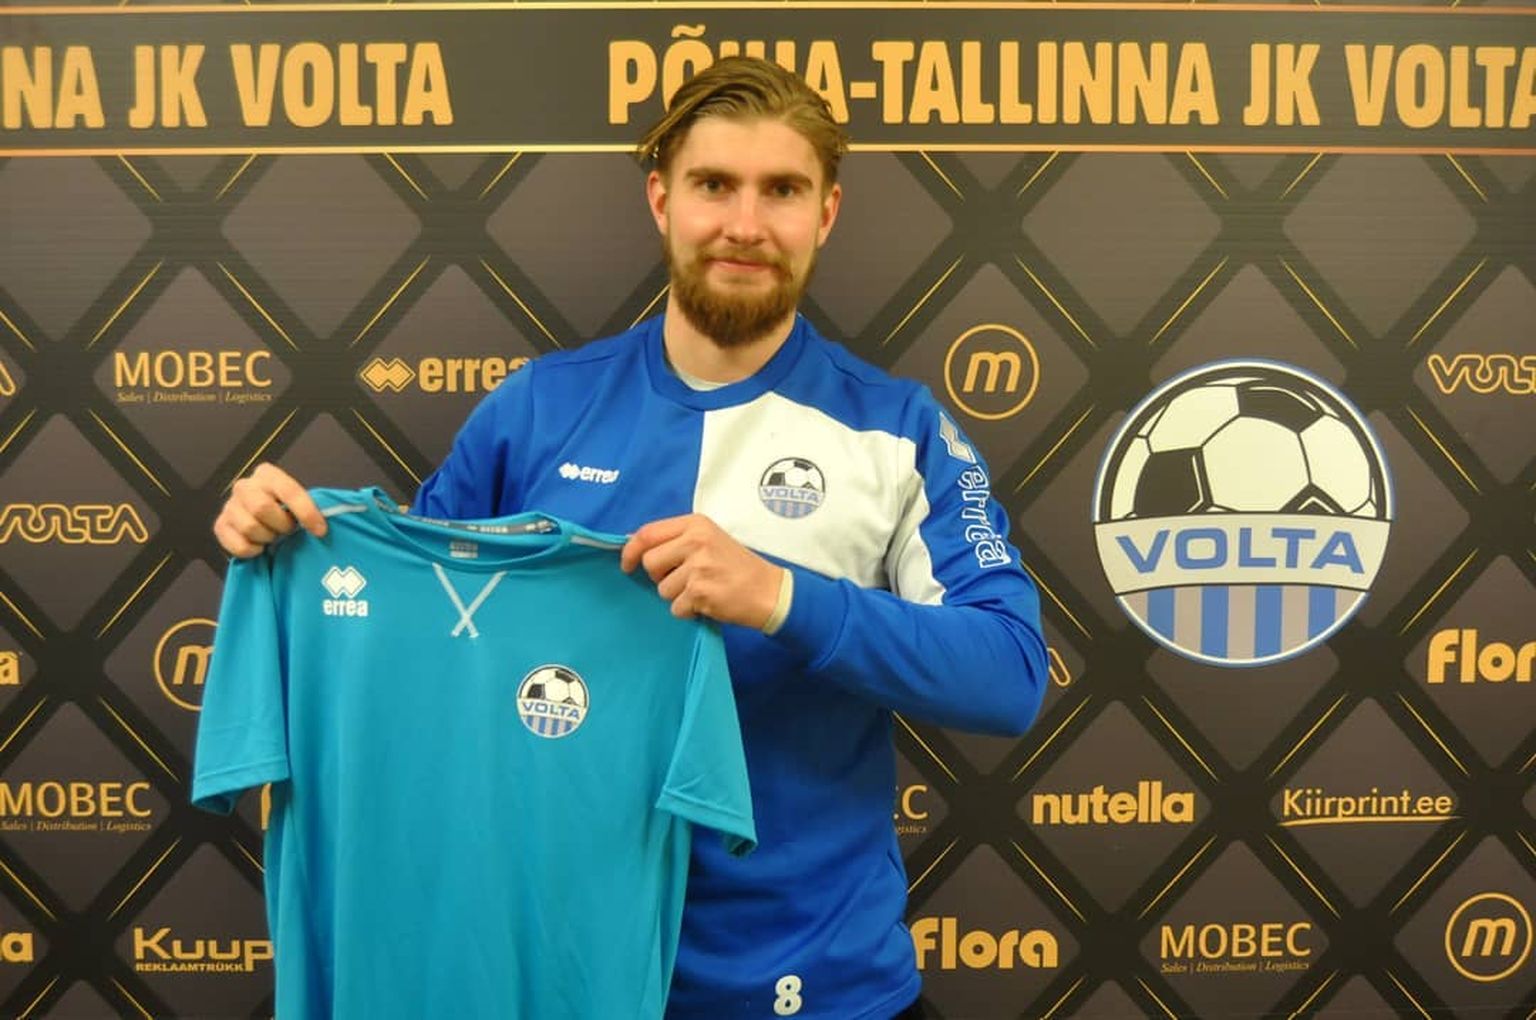 Kaspar Mutso jätkab amatöörpallurina Põhja-Tallinna Volta ridades.